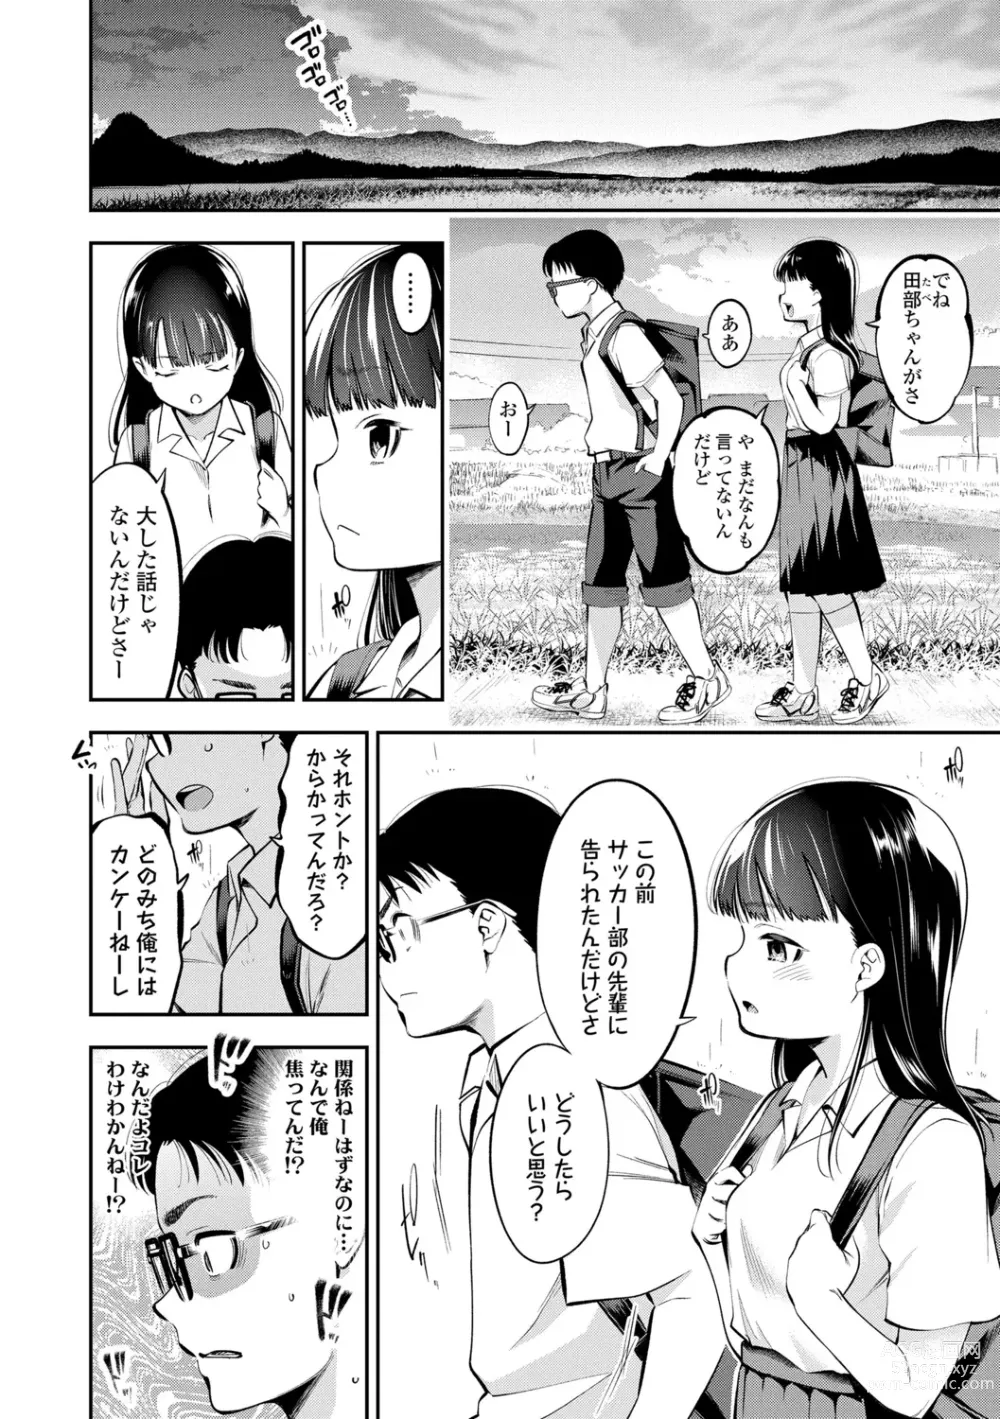 Page 8 of manga Onnanoko ni Shite yo - Make me your first lover.